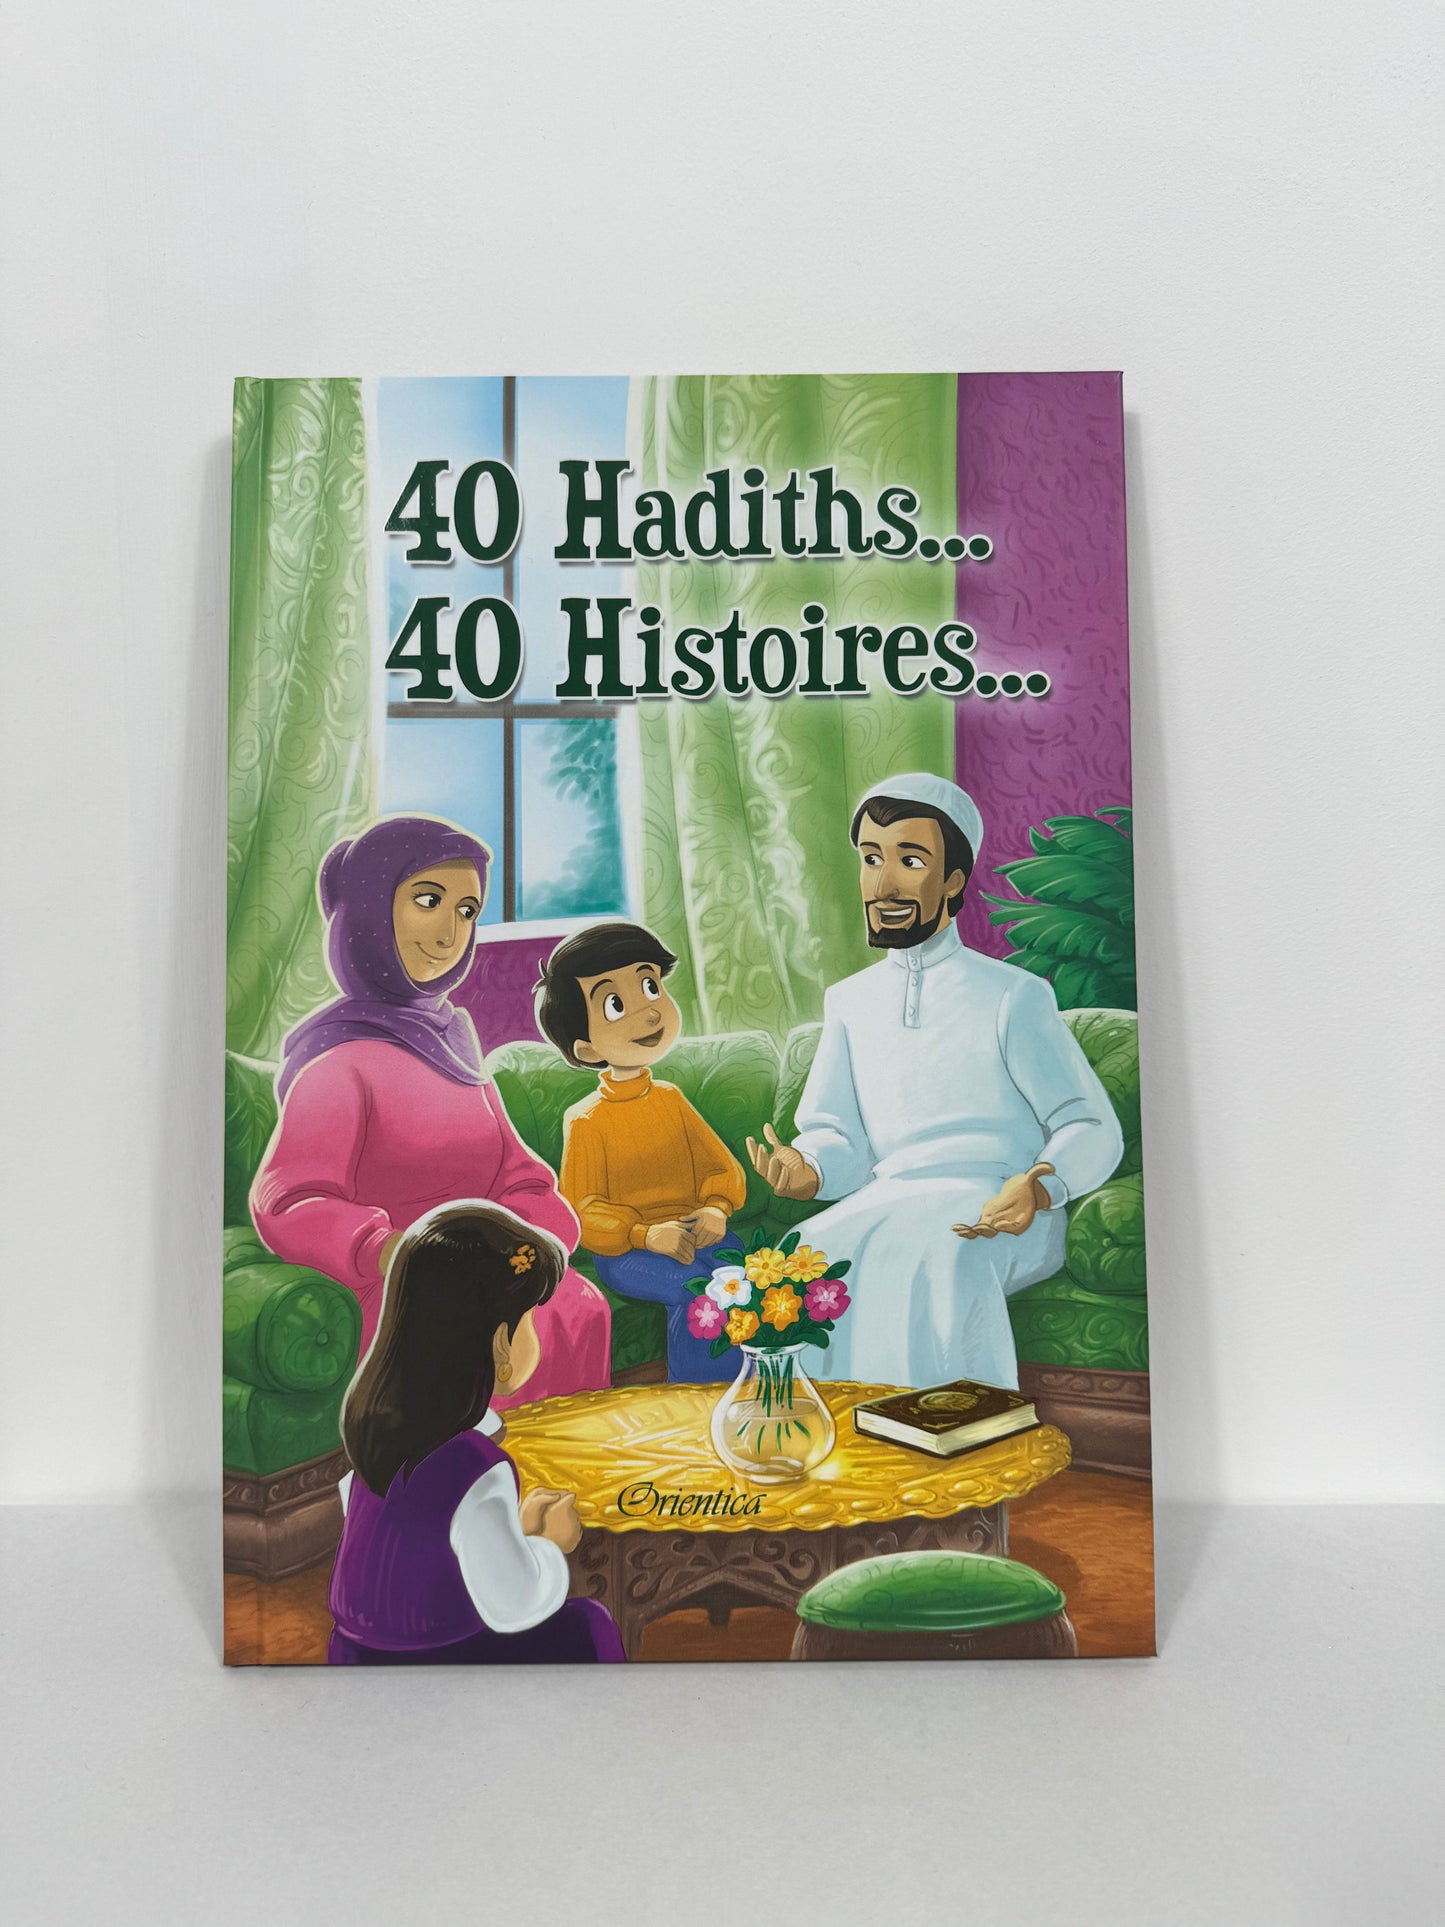 40 hadiths, 40 histoires